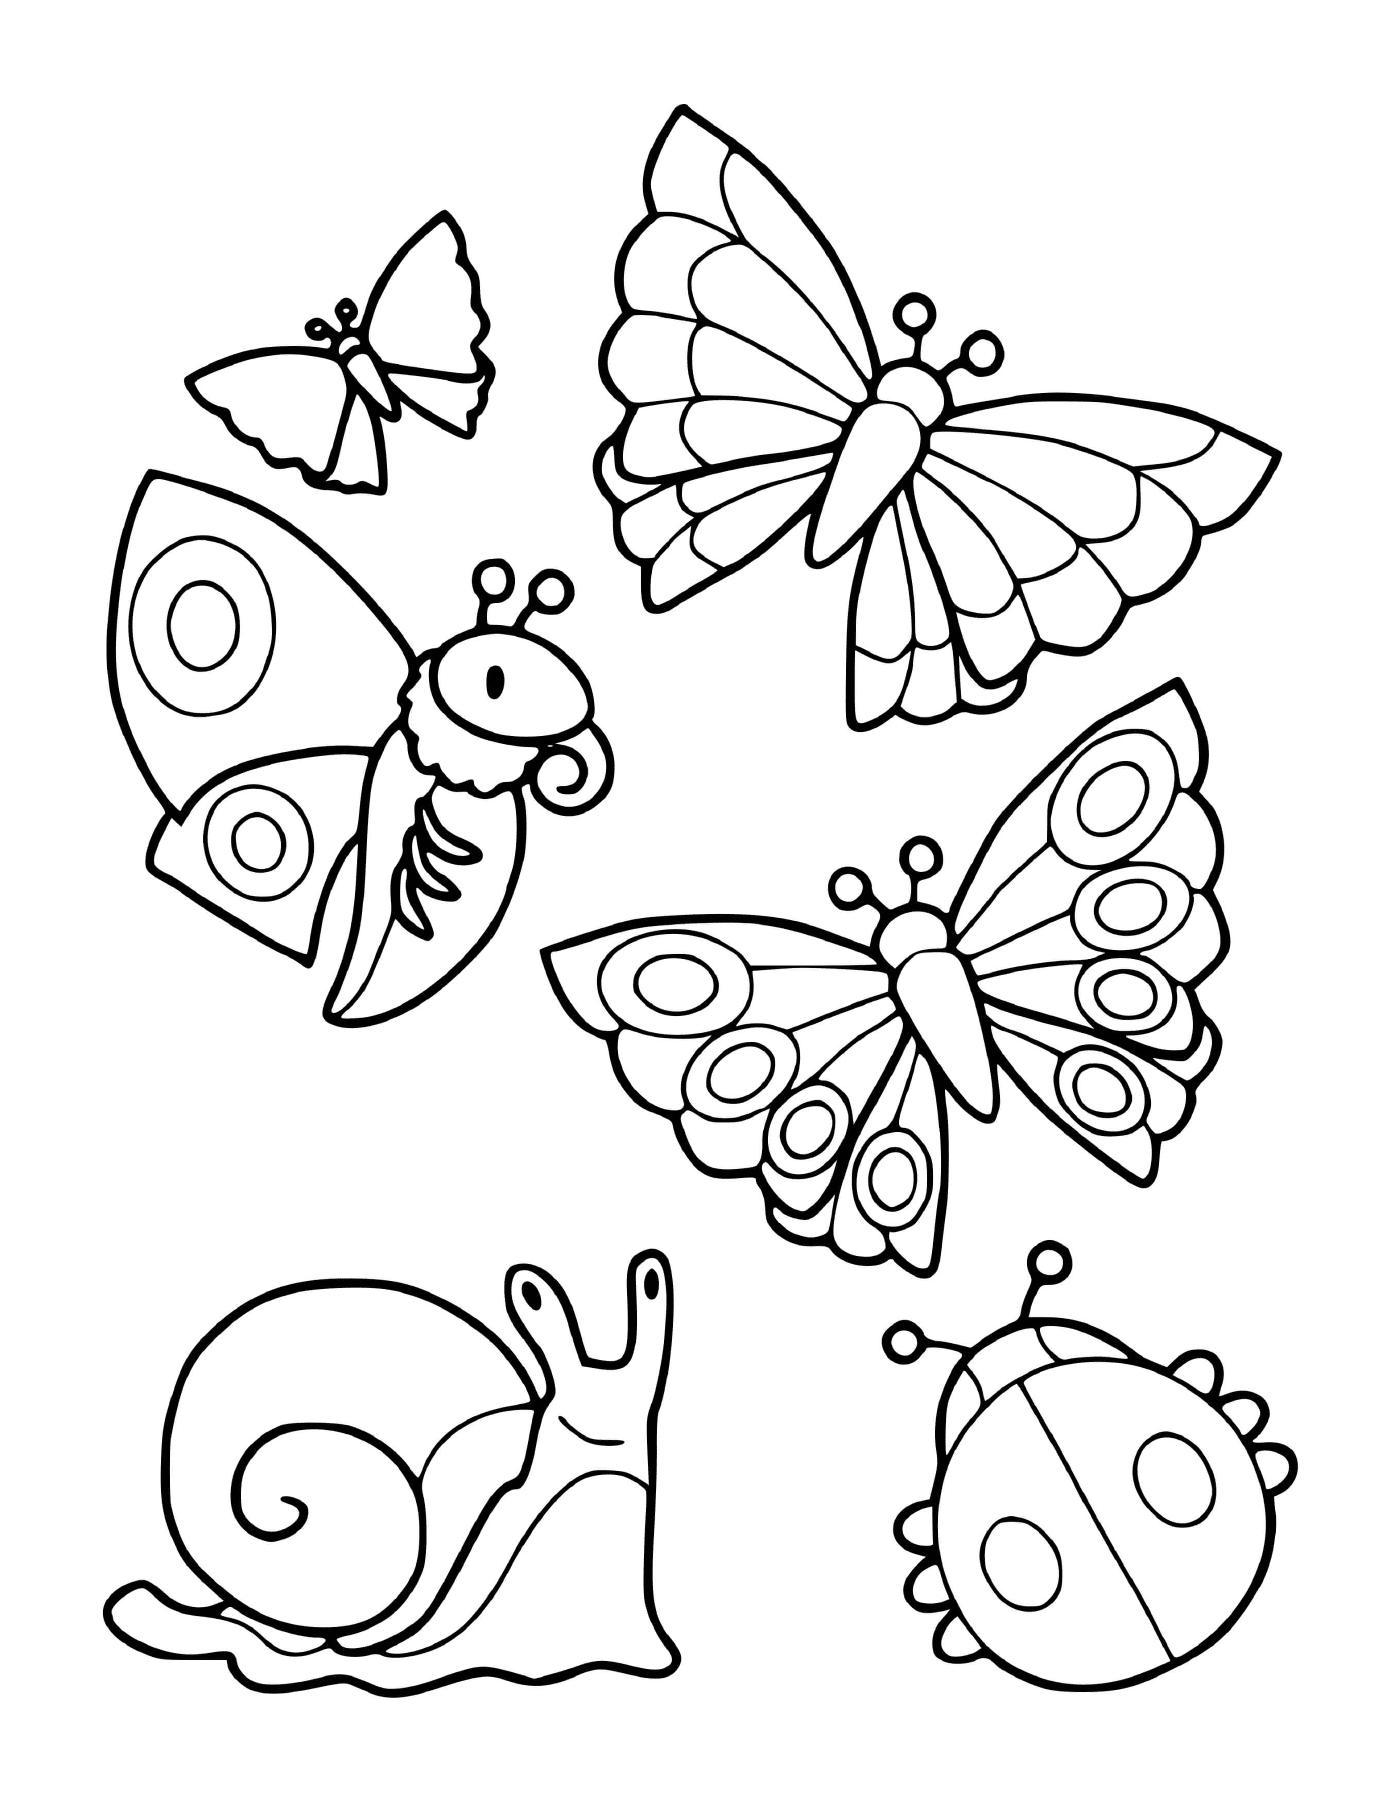  Uma coleção de insetos, incluindo borboletas e um caracol 